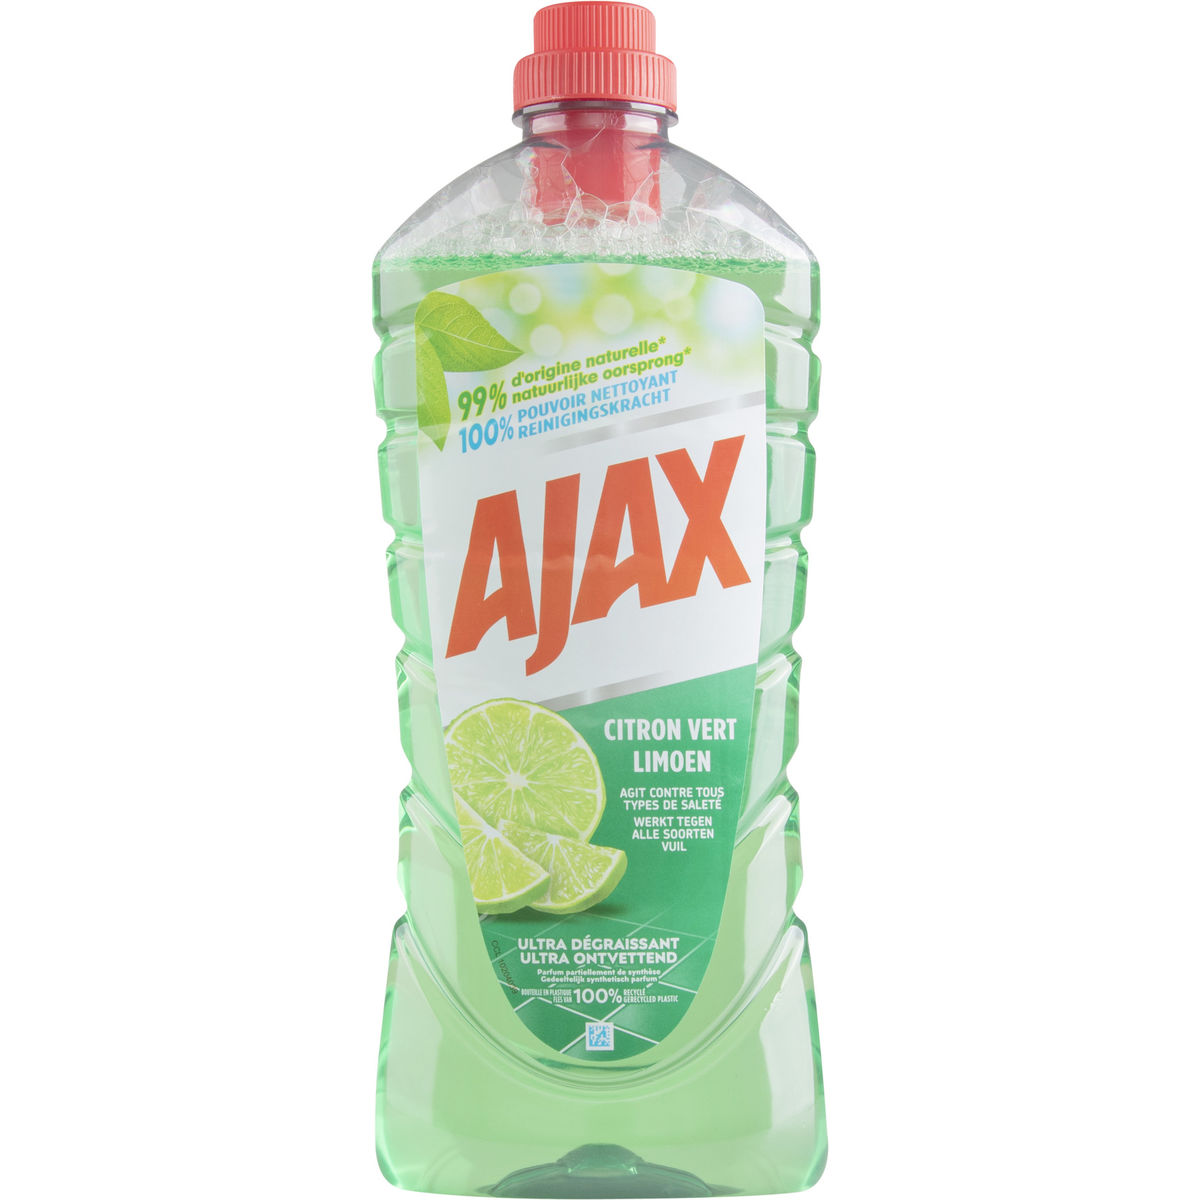 Ajax Limoen allesreiniger - 1.25L